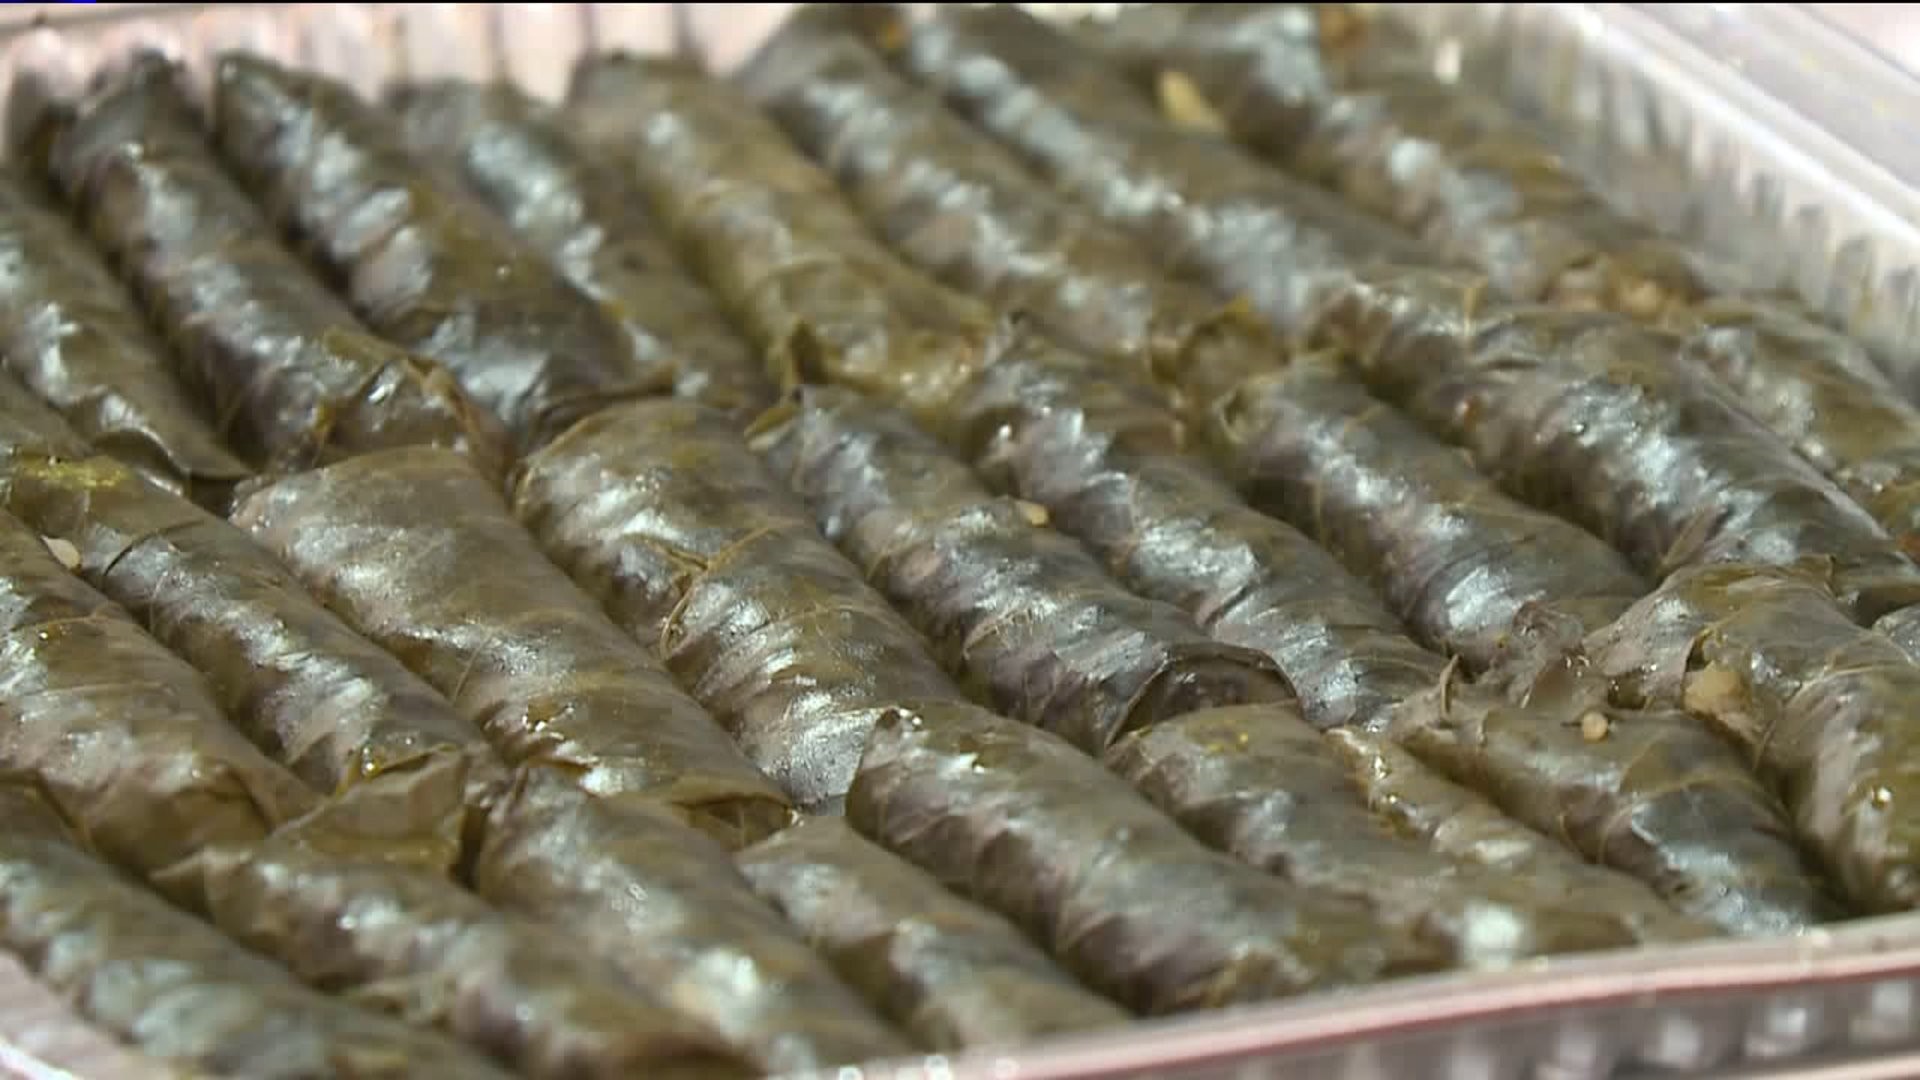 Lebanese Food Festival a Hit in Wilkes-Barre